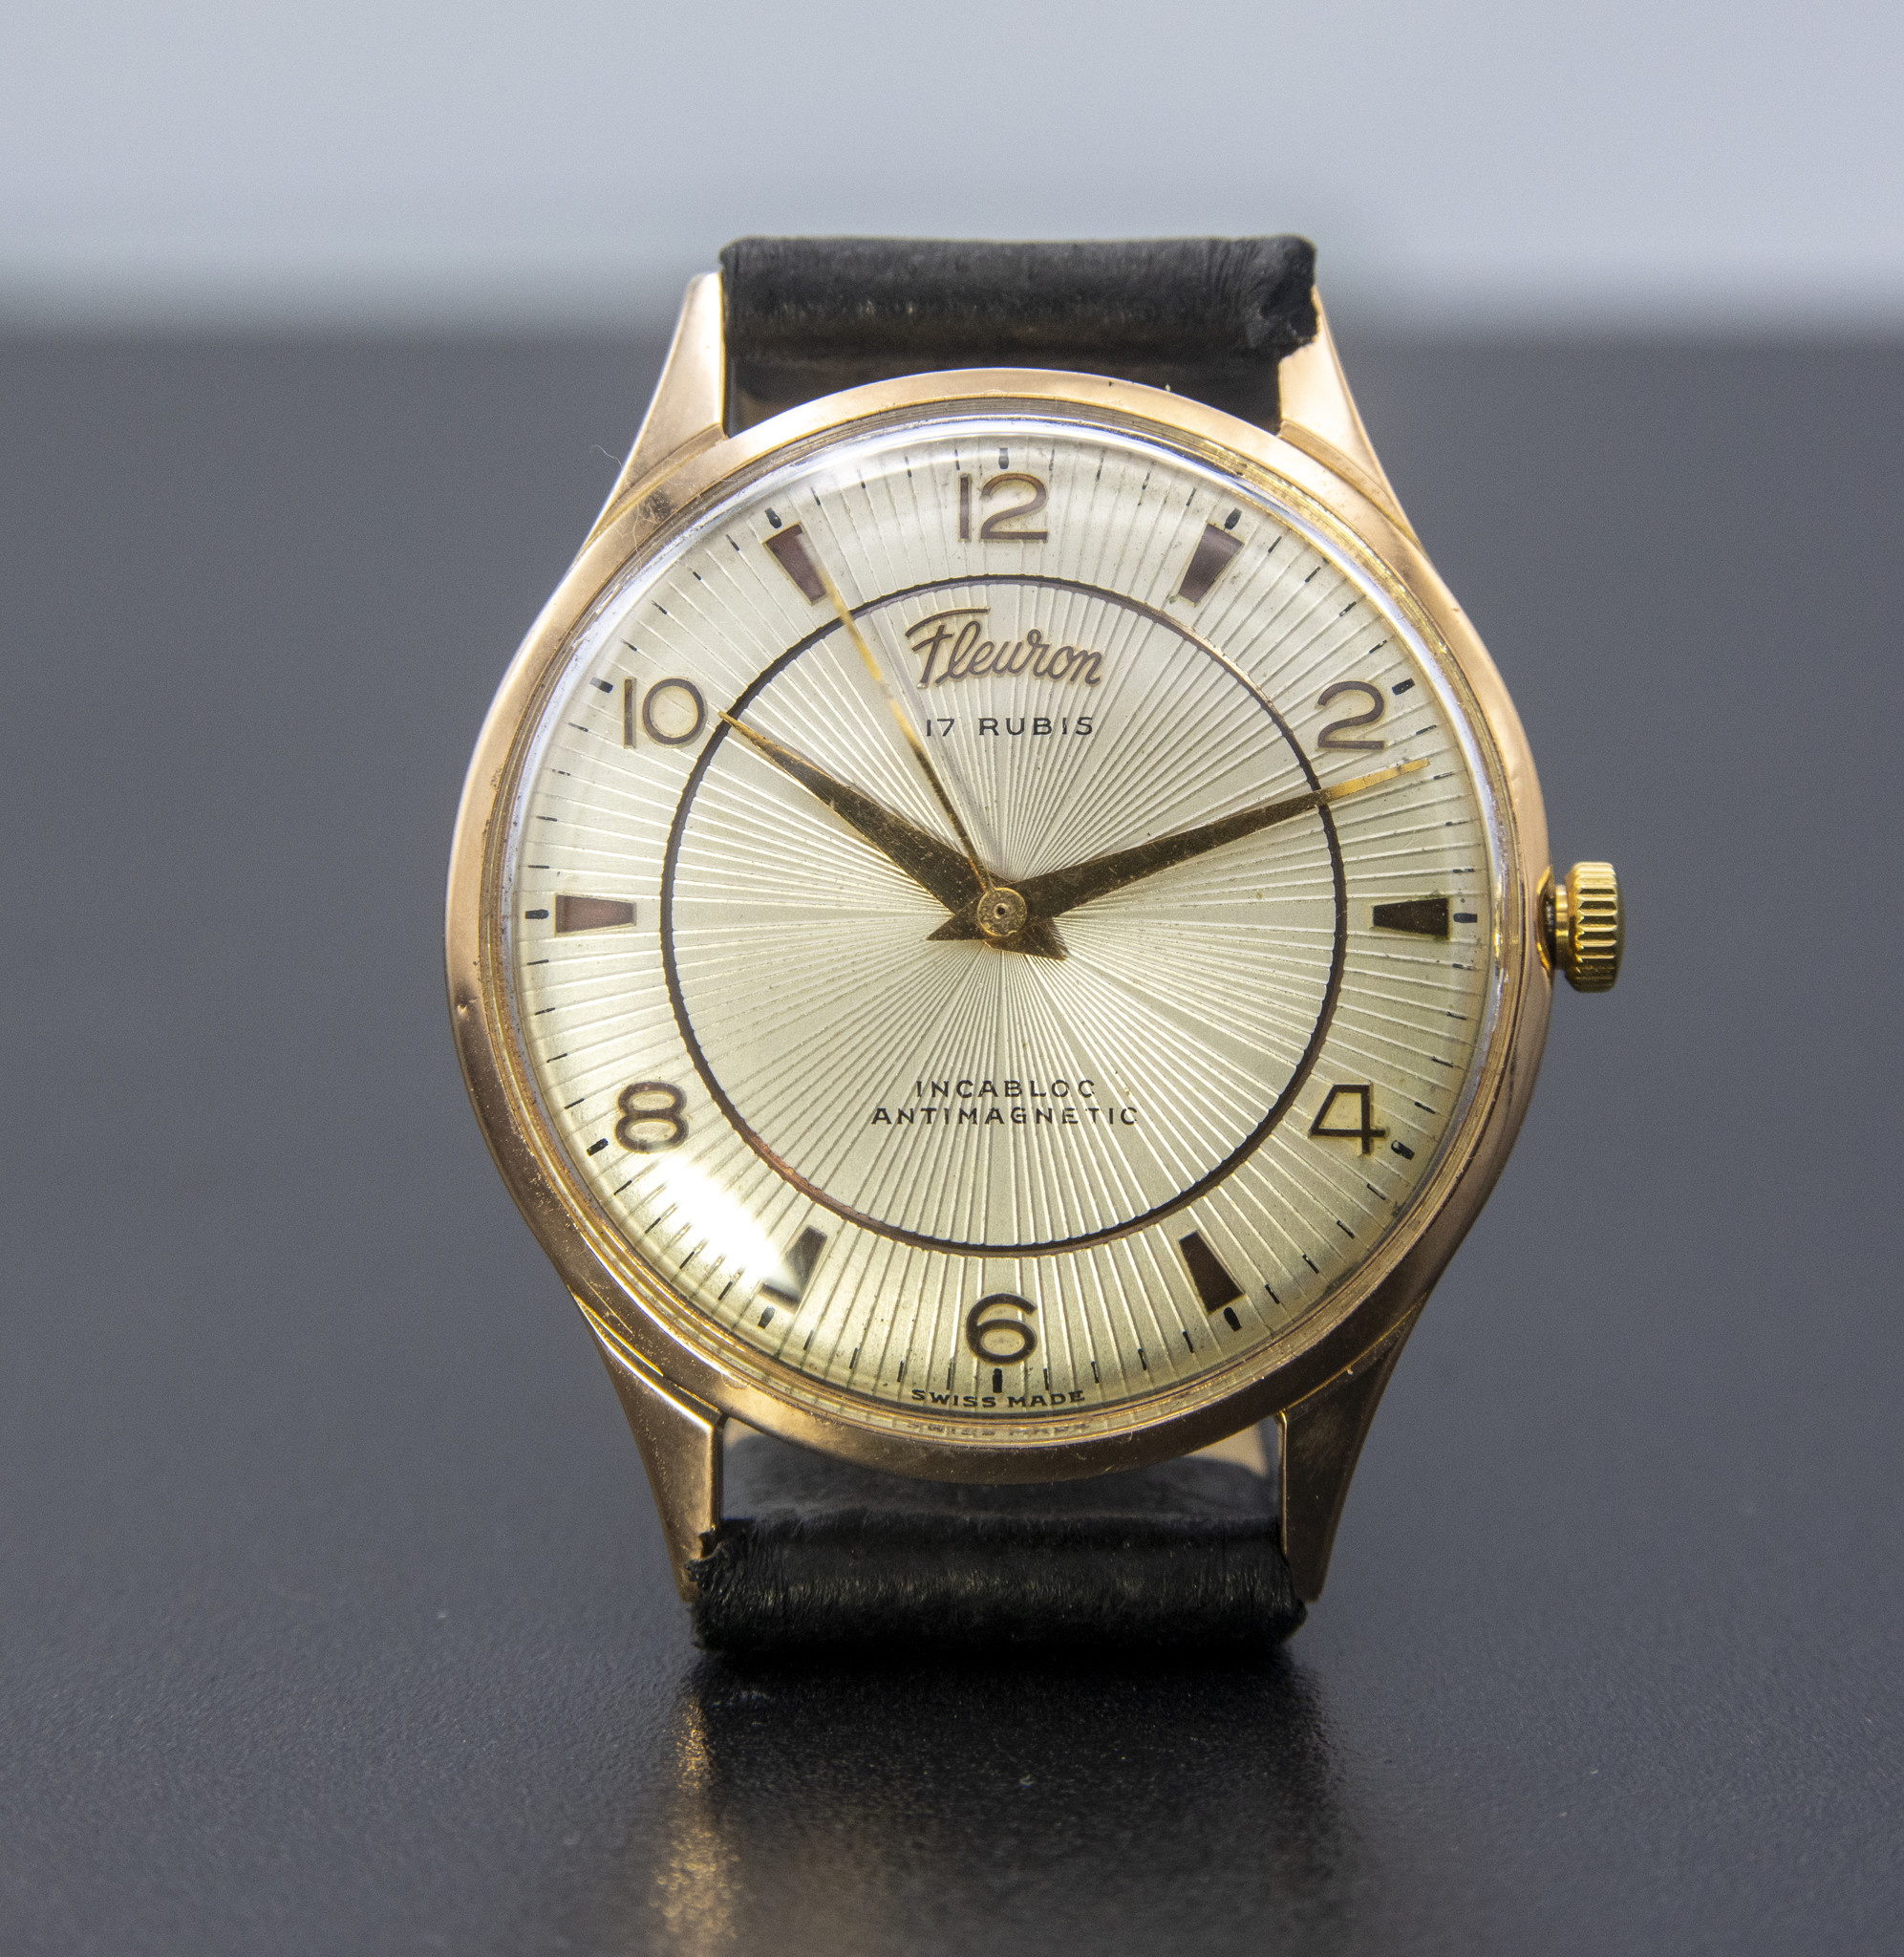 andere Het begin Demon Play Occasion 18 karaat rosé goud heren horloge Fleuron - Inkoop & verkoop goud,  zilver, juwelen, horloges sinds 1946